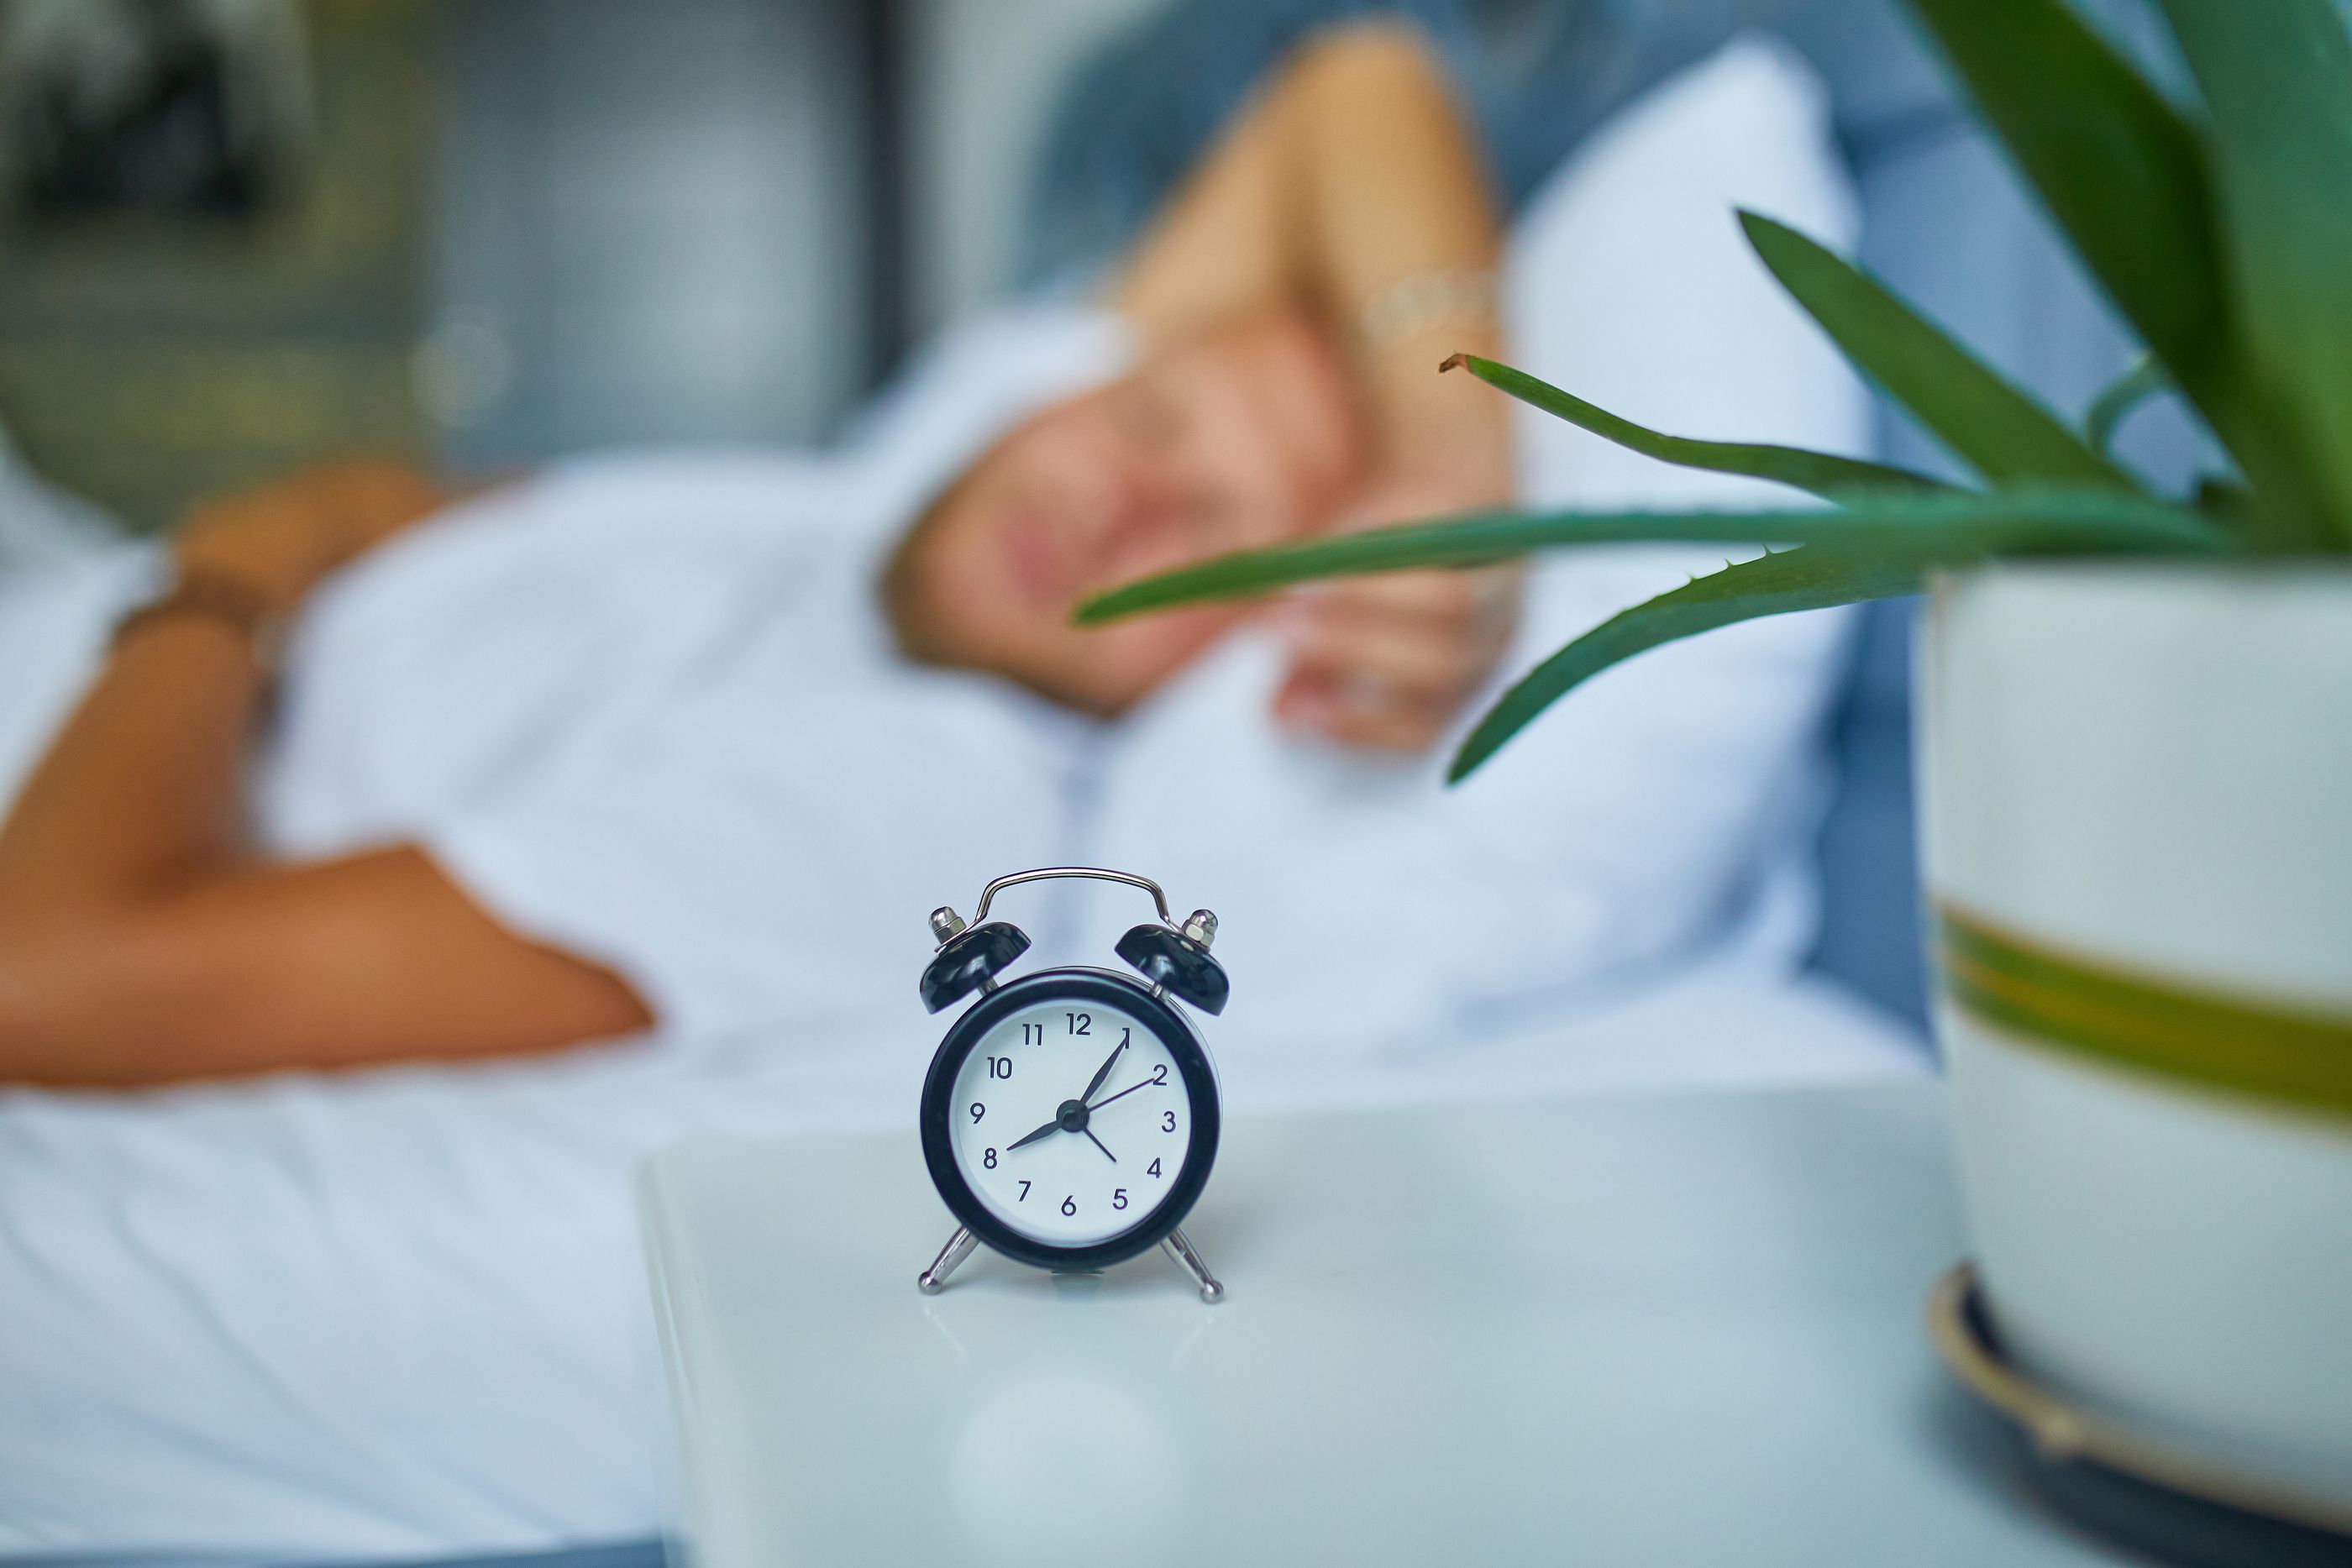 Dormir bien también ayuda a ralentizar el envejecimiento a nivel celular